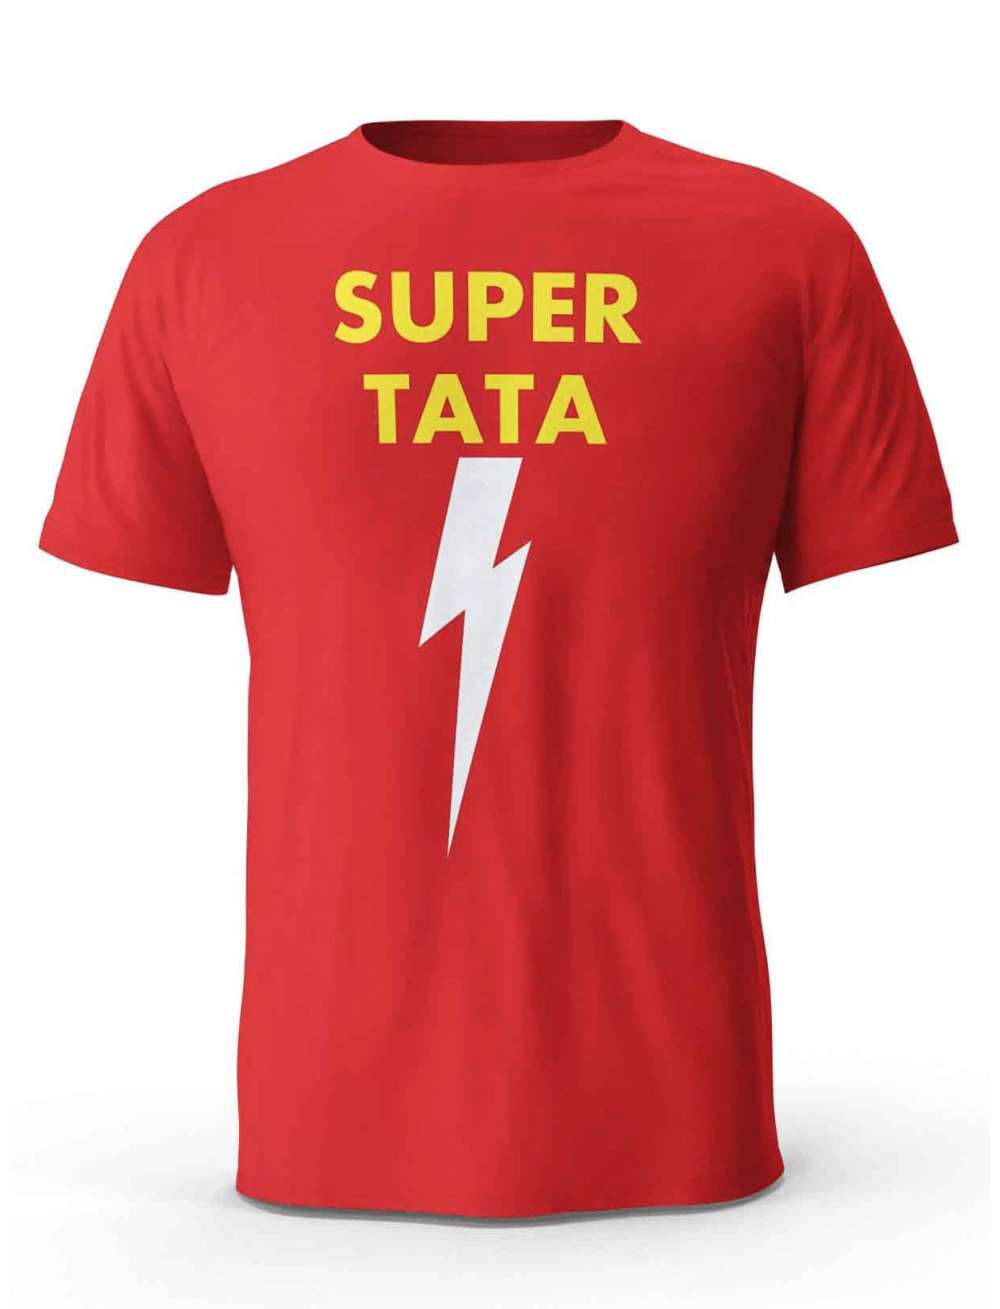 Koszulka Super Tata, T-shirt dla Taty